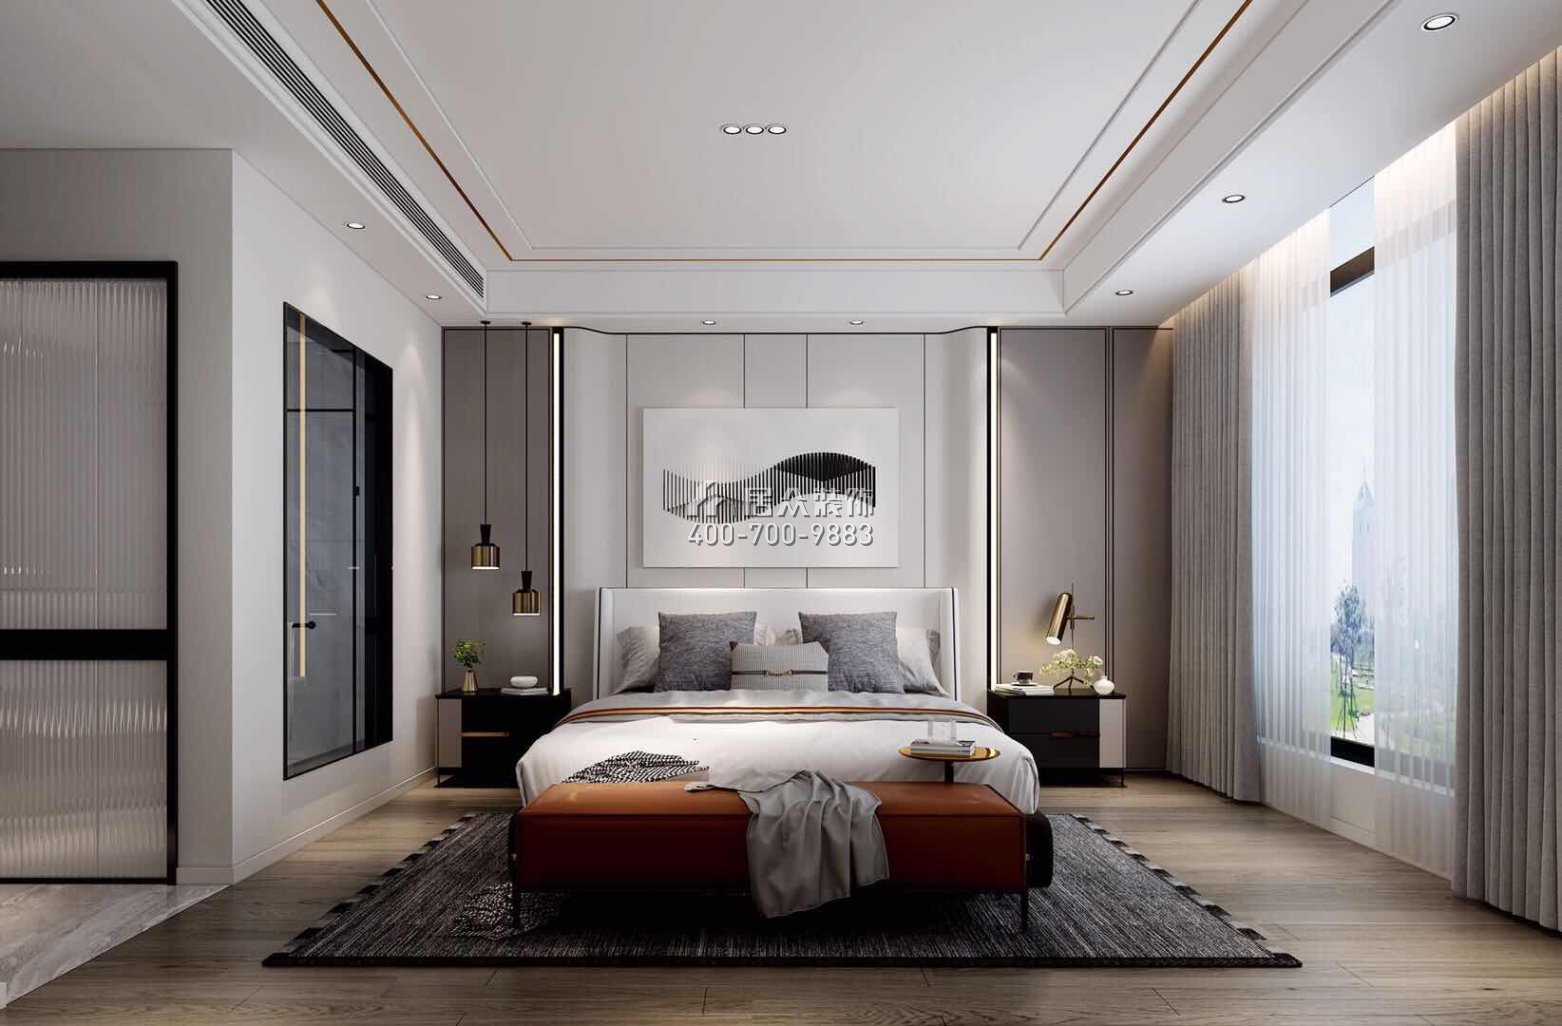 自建房300平方米现代简约风格平层户型卧室装修效果图